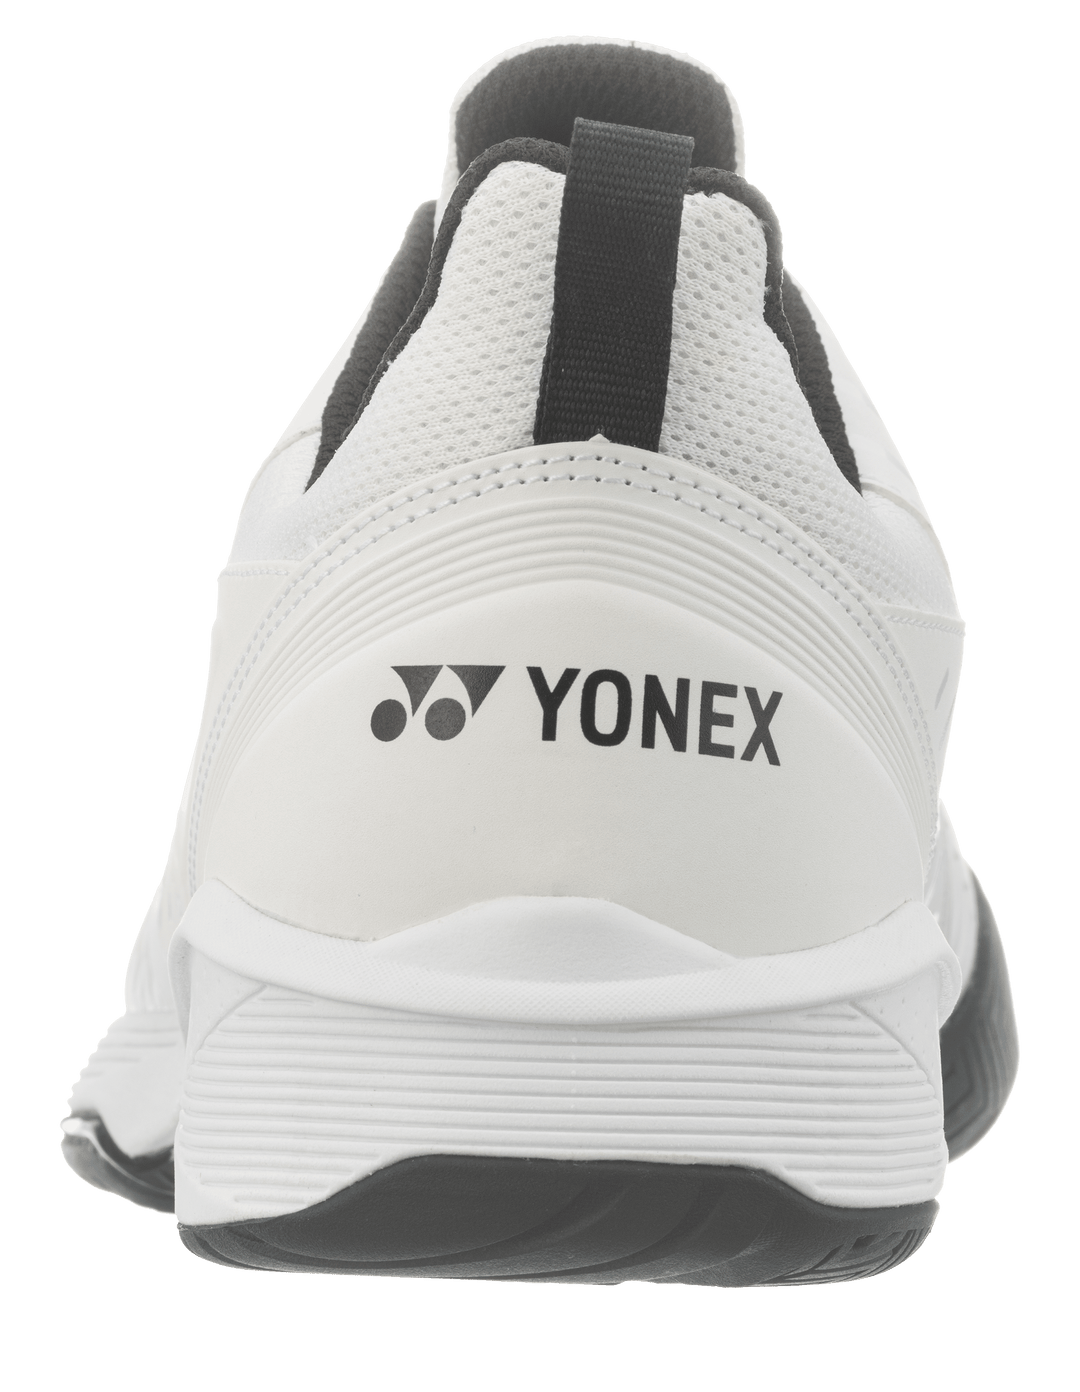 Yonex Power Cushion Sonicage 3 Plus 4.5E Wide Unisex Tennis All Court Shoe White Men's Tennis Shoes Yonex 